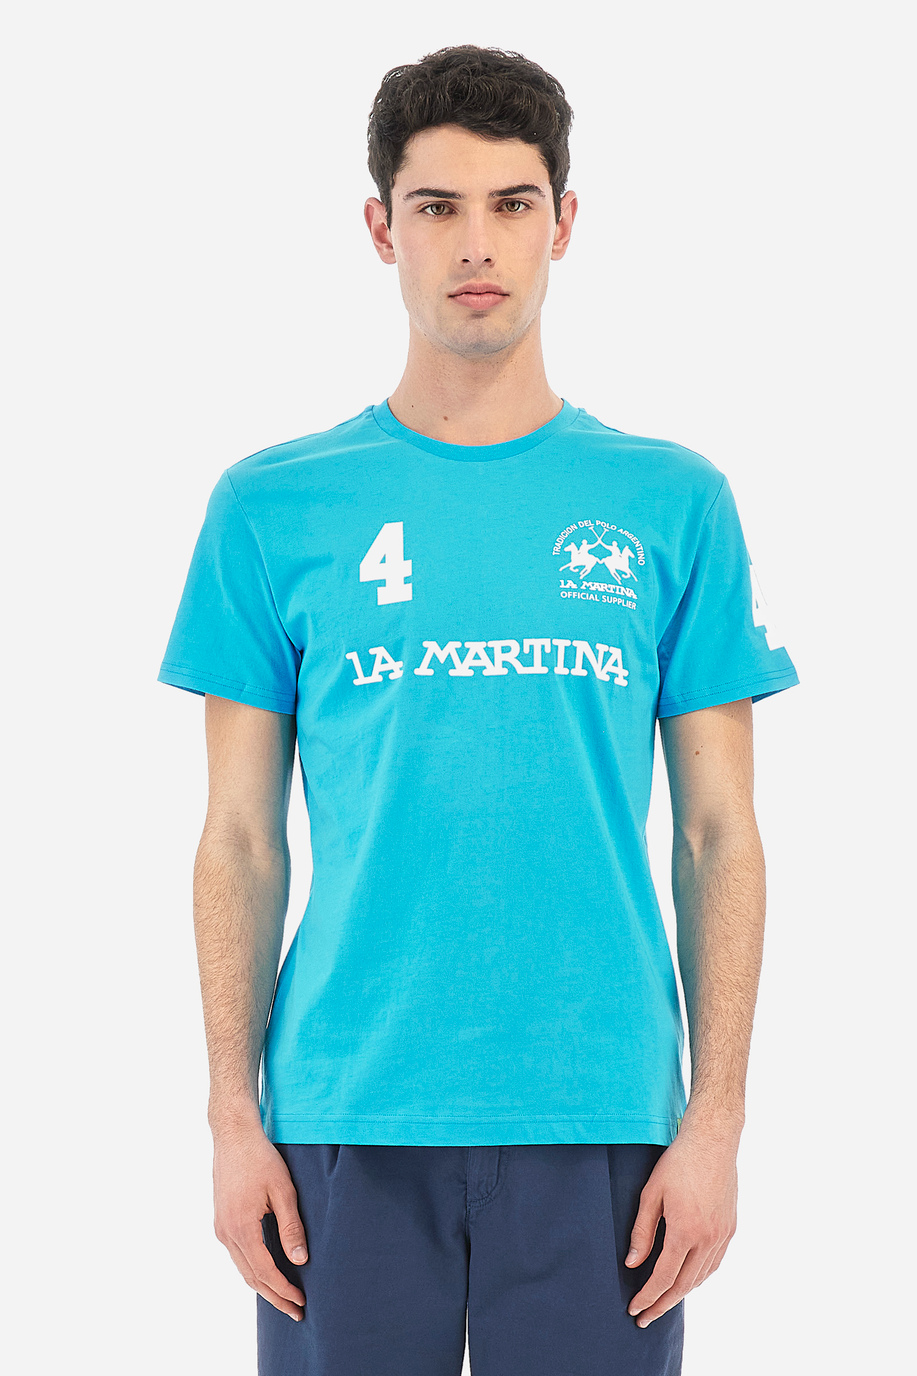 Herren-T-Shirt aus 100 % Baumwolle mit normaler Passform und kurzen Ärmeln - Reichard - T-Shirts | La Martina - Official Online Shop